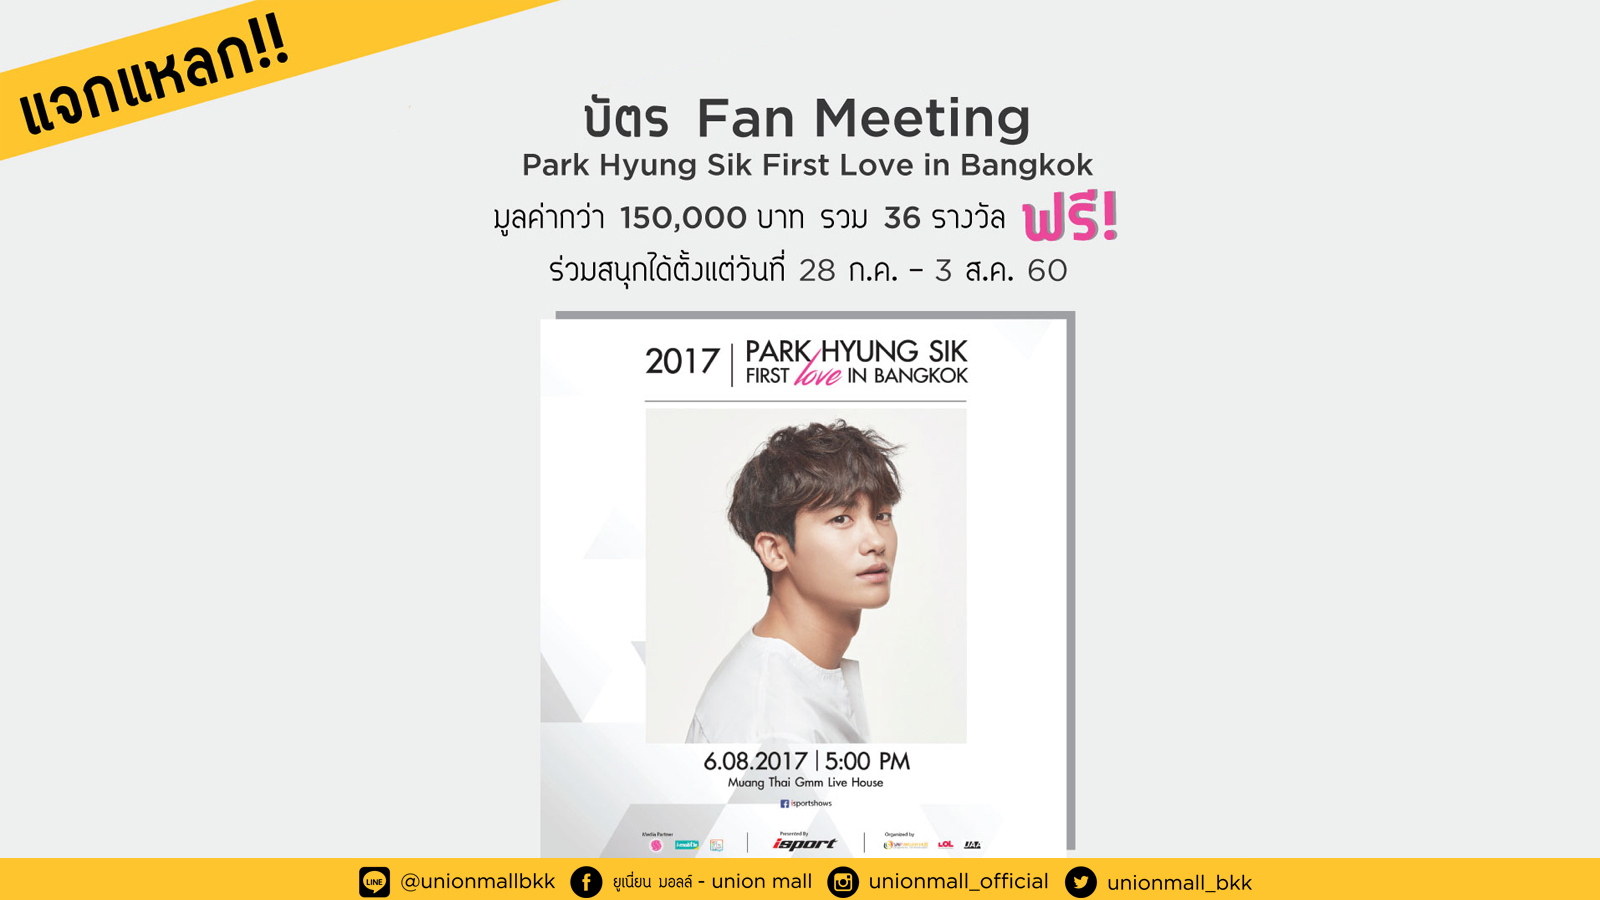 แจกแหลก บัตร Fan Meeting ลุ้นรับบัตร Park Hyung Sik First Love in Bangkok มูลค่ากว่า 150,000 บาท รวม 36 รางวัล แจกฟรี 4 ช่องทาง